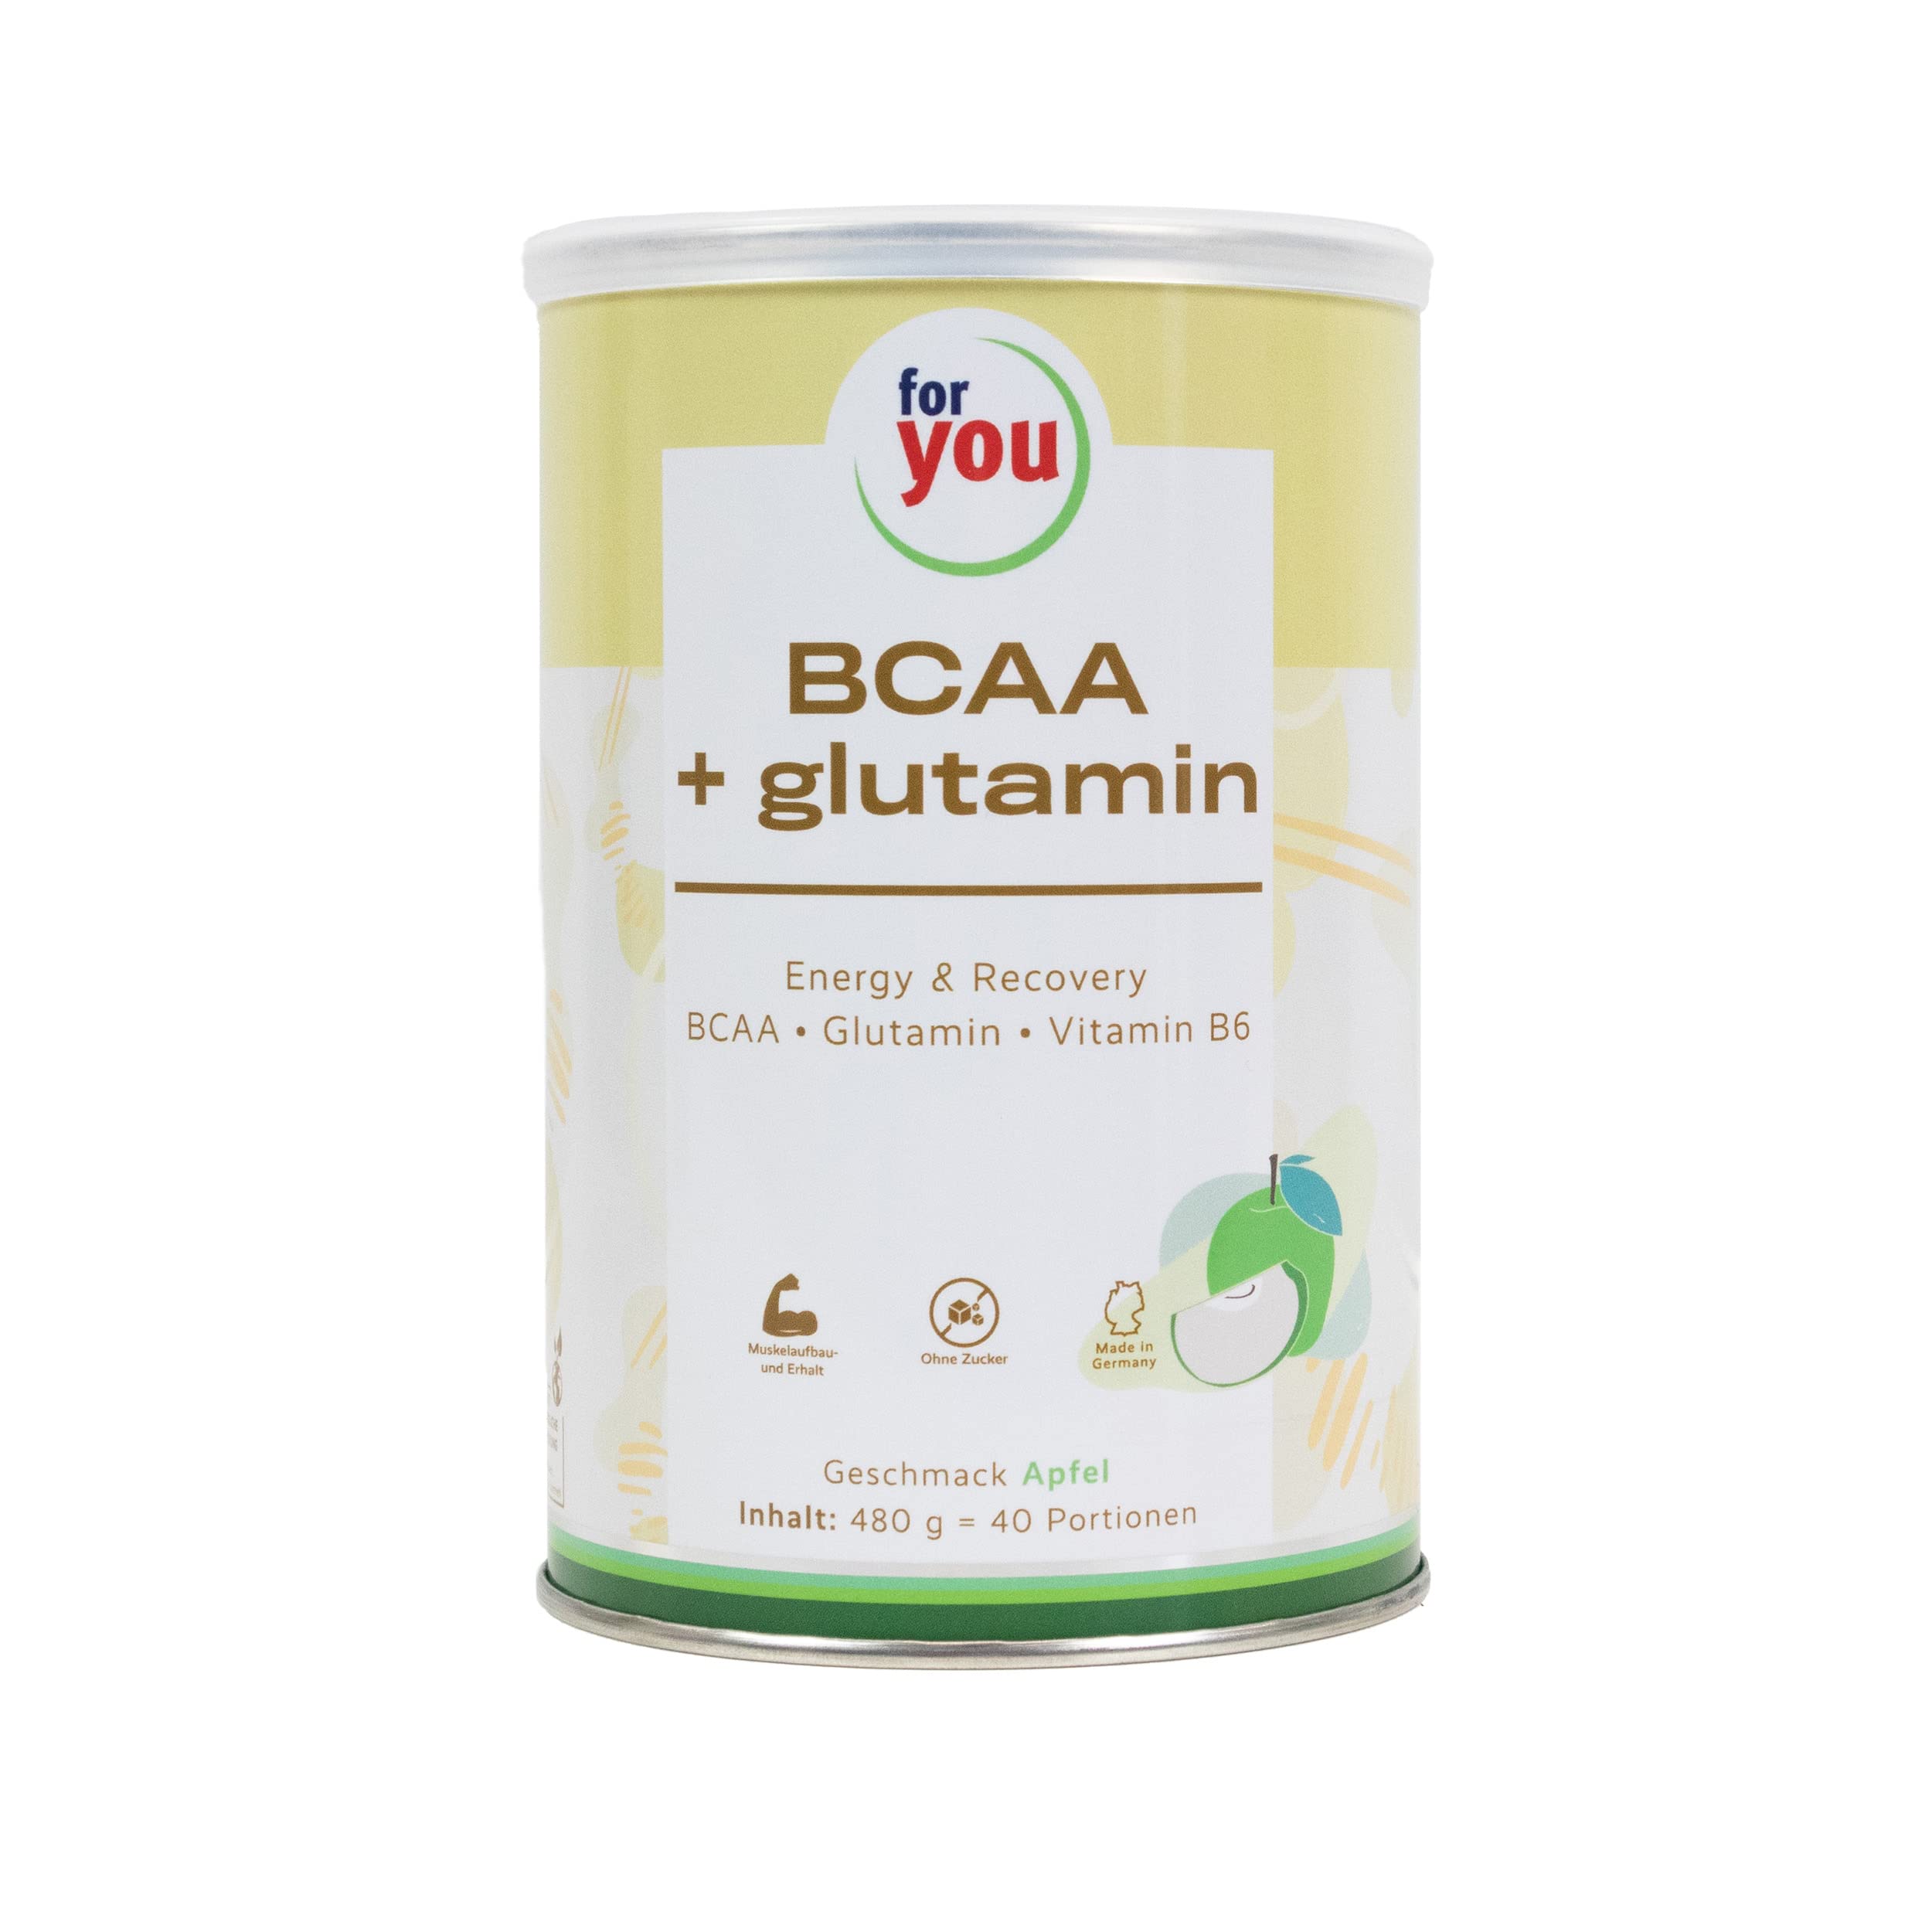 BCAA + Glutamin Energy & Recovery I 40 Portionen hochreine konzentrierte Mischung L-Leucin L-Isoleucin L-Valin L-Glutamin Vitamin B 6 I Sportnahrung BCAA Aminosäuren Pulver | Workout-Booster (Apfel)